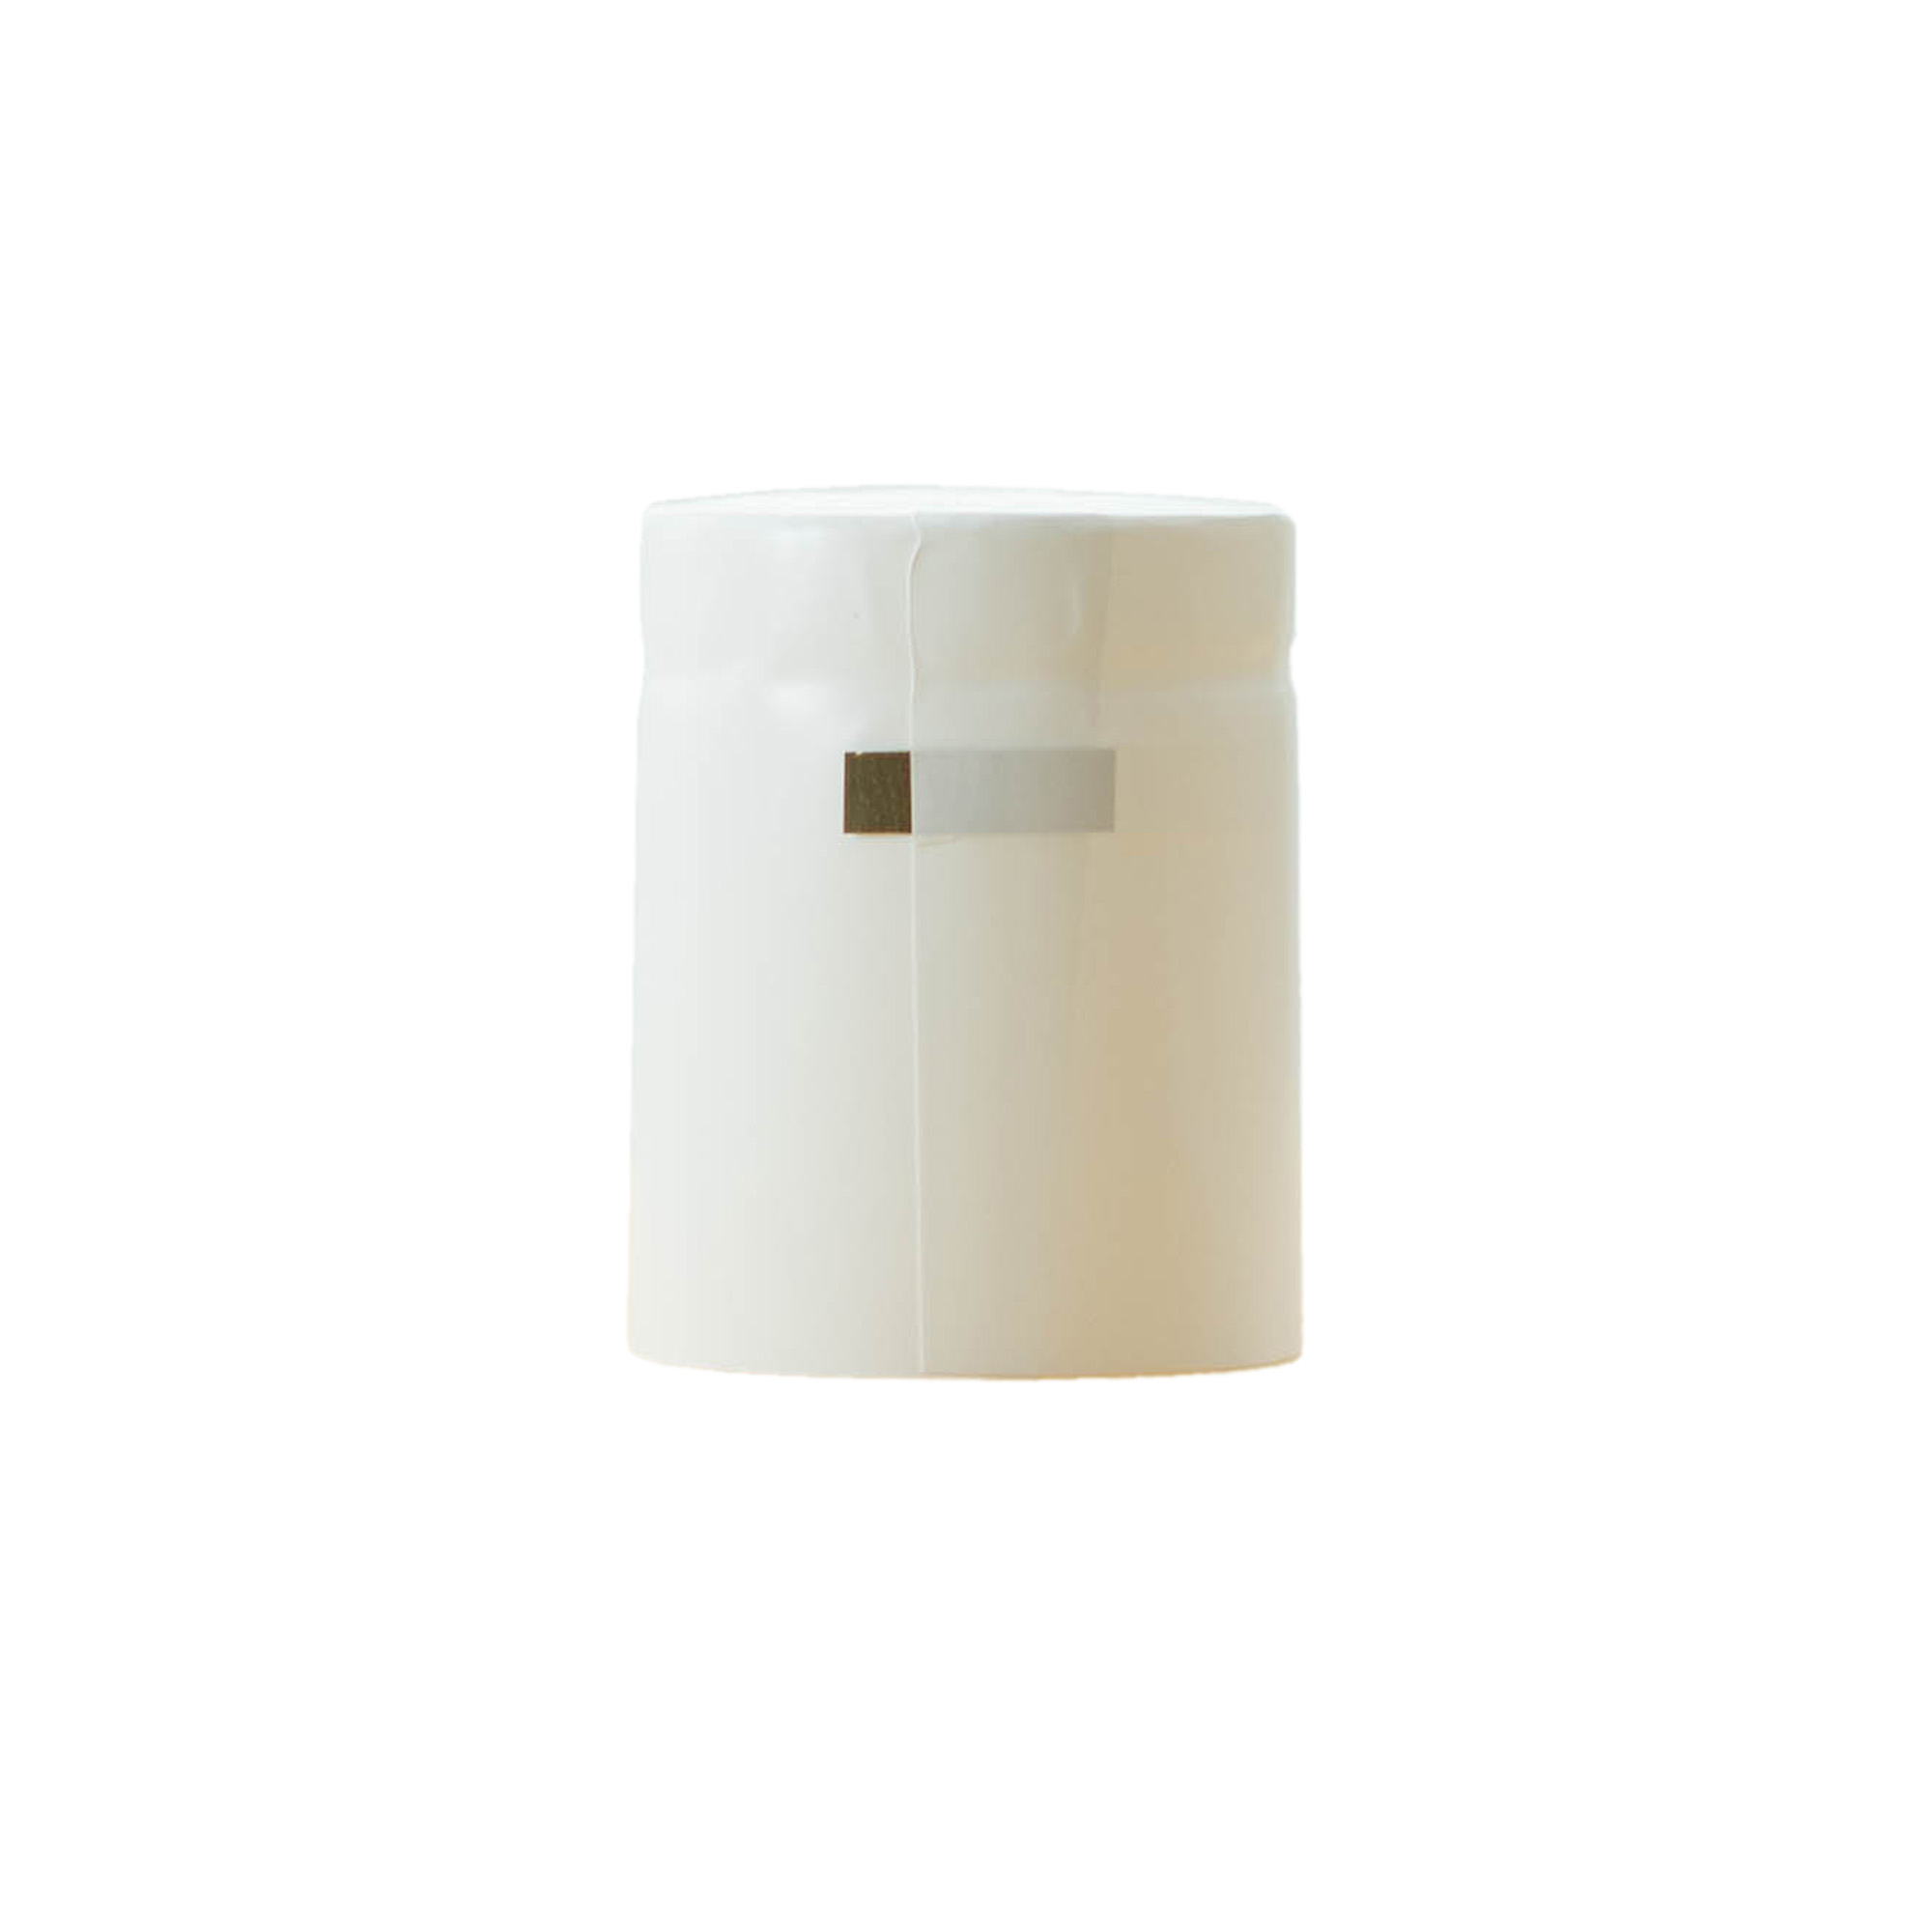 Capsula termoretraibile 32x41, plastica PVC, bianco